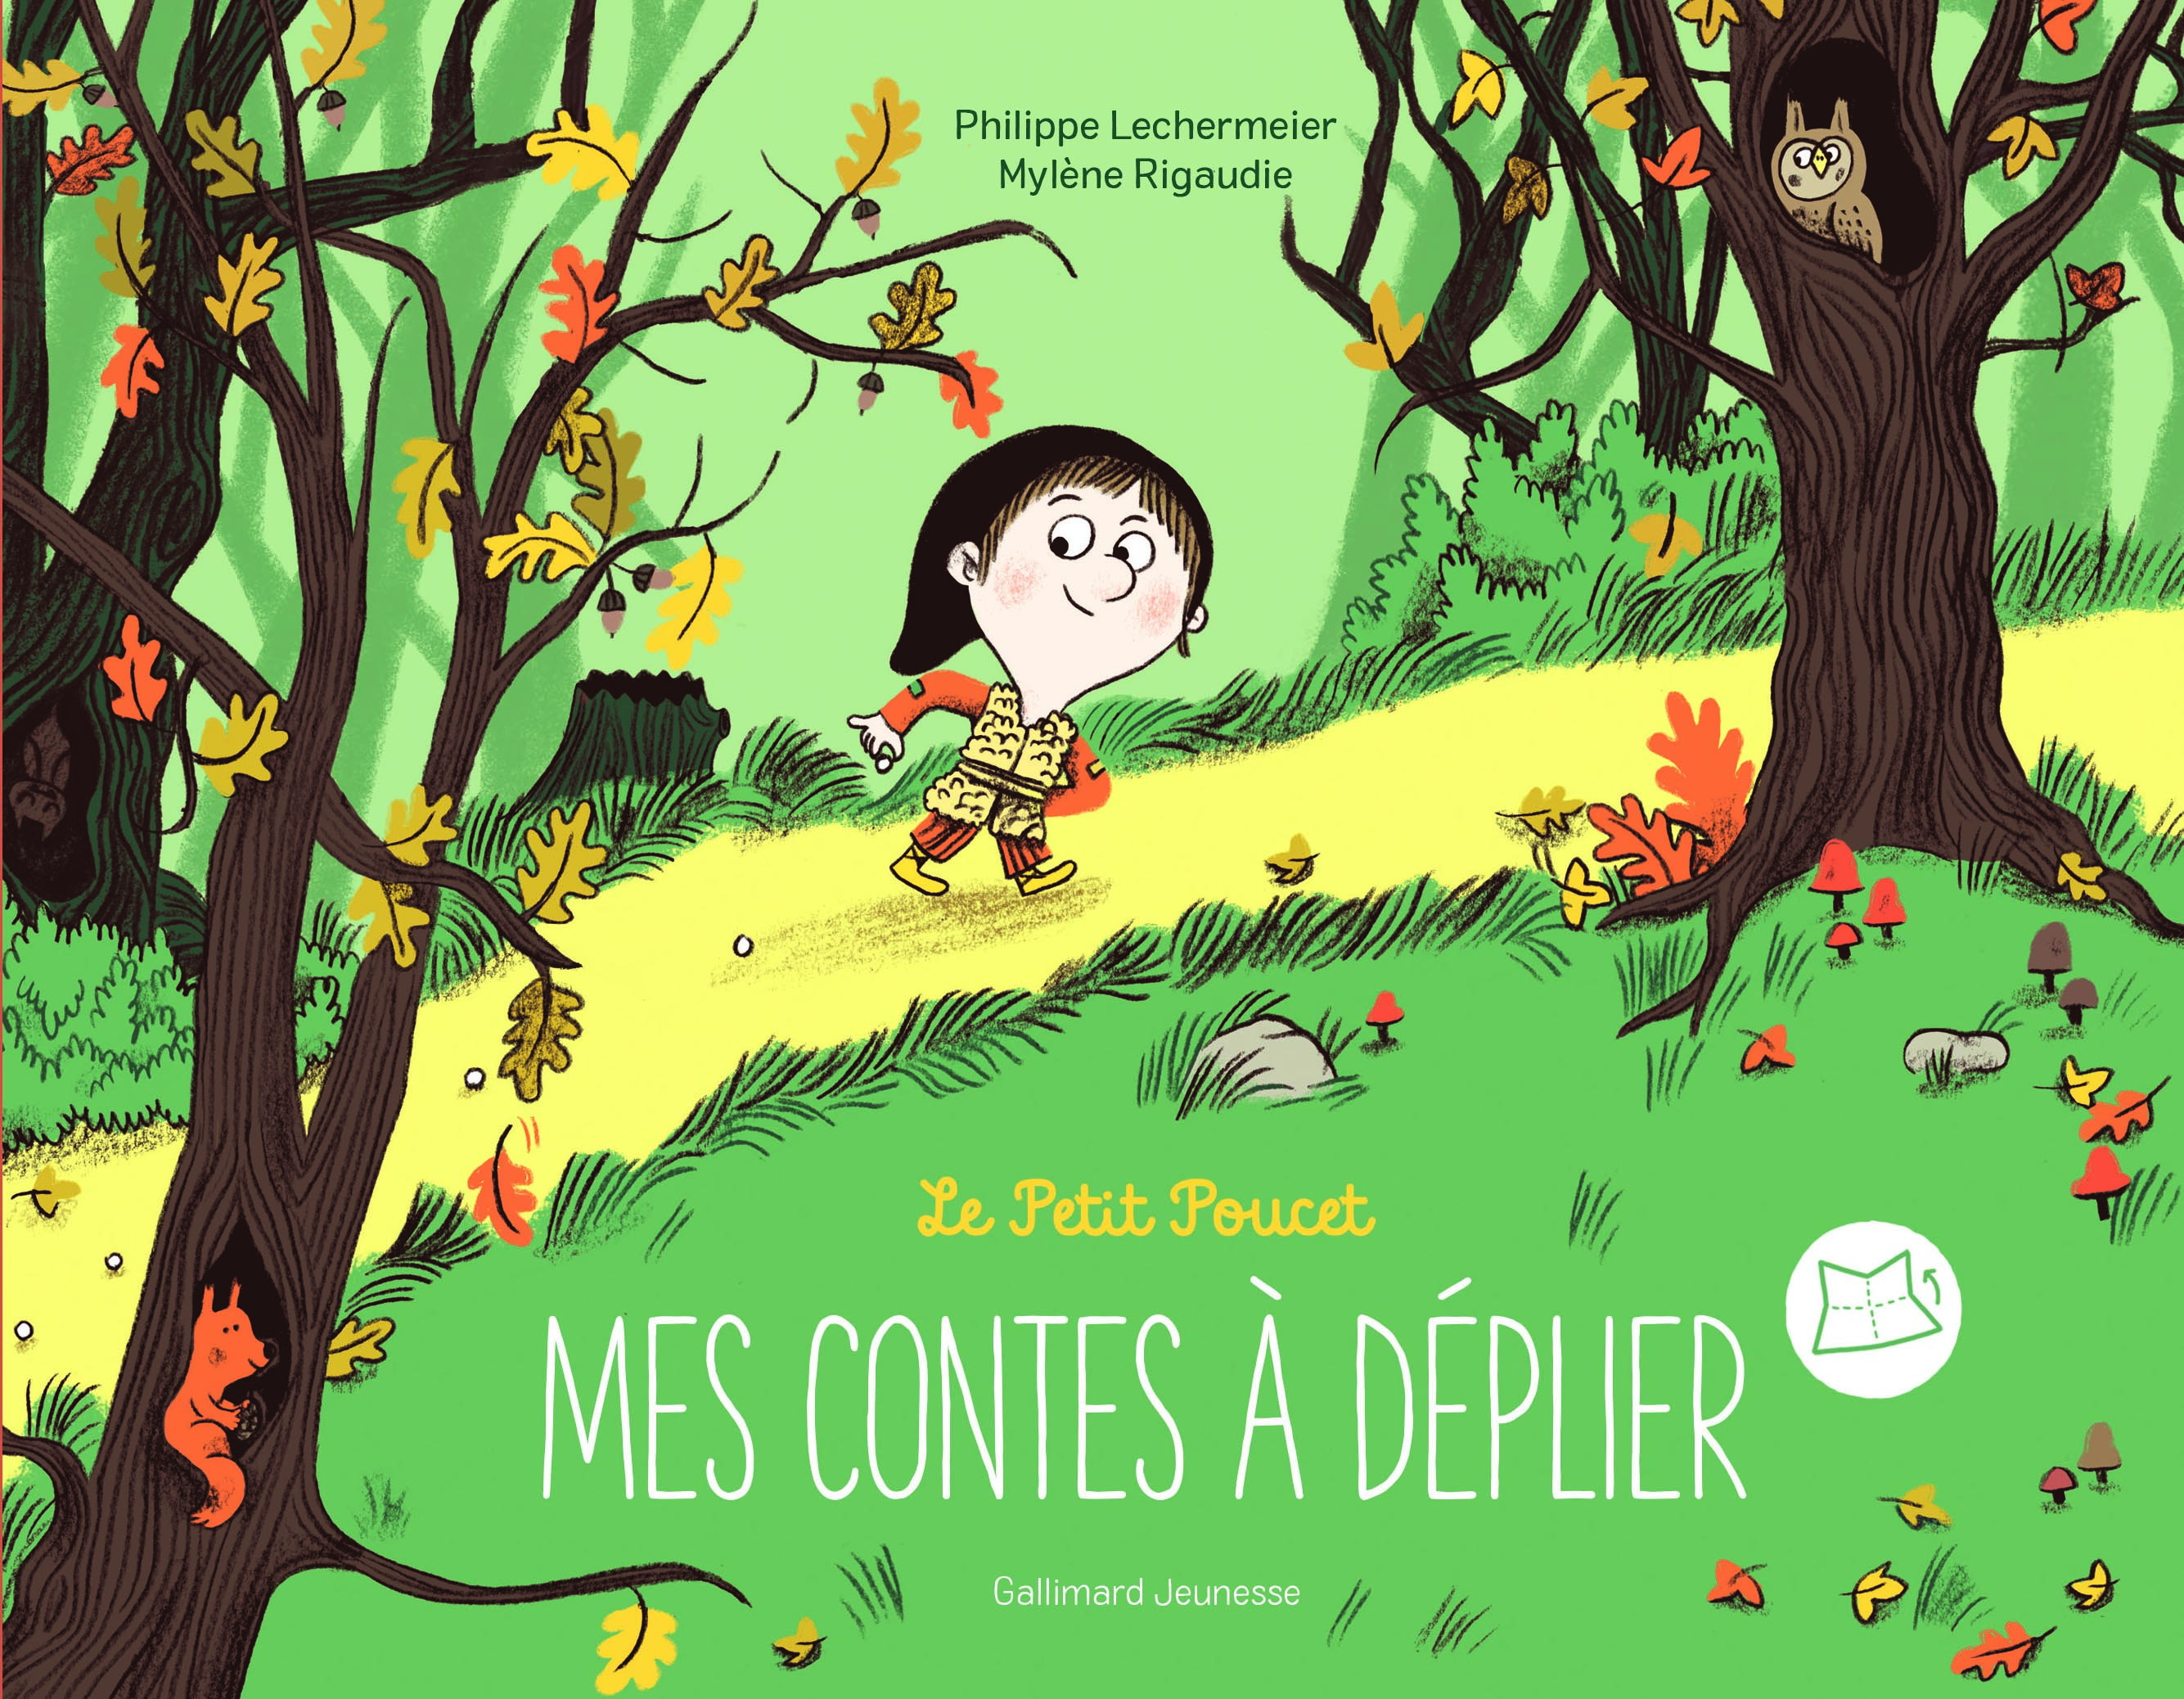 Livres Illustres Le Petit Poucet Mes Contes A Deplier Gallimard Jeunesse